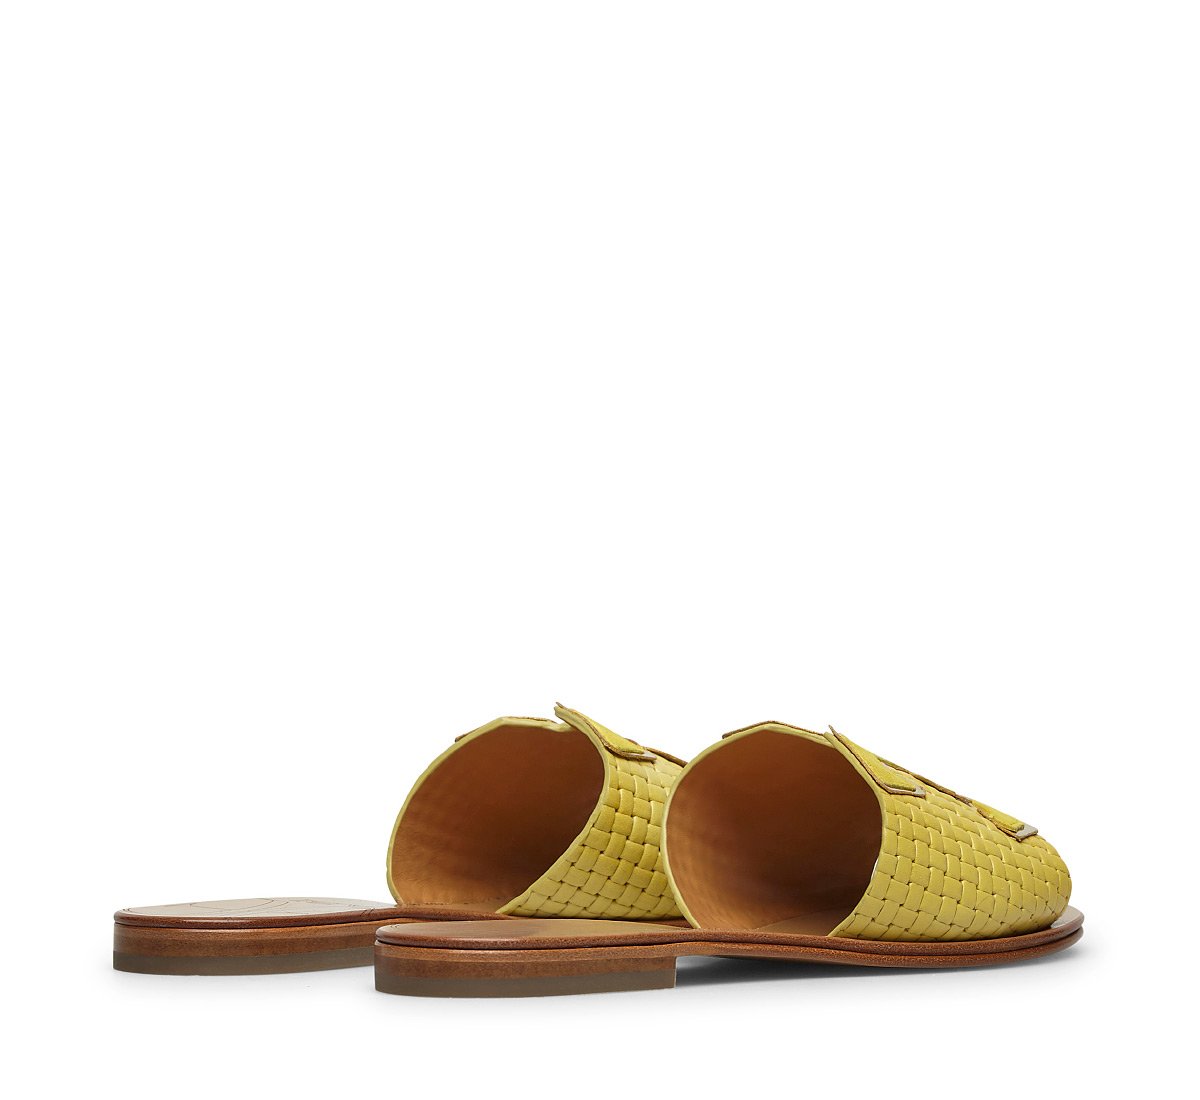 Calfskin sandals